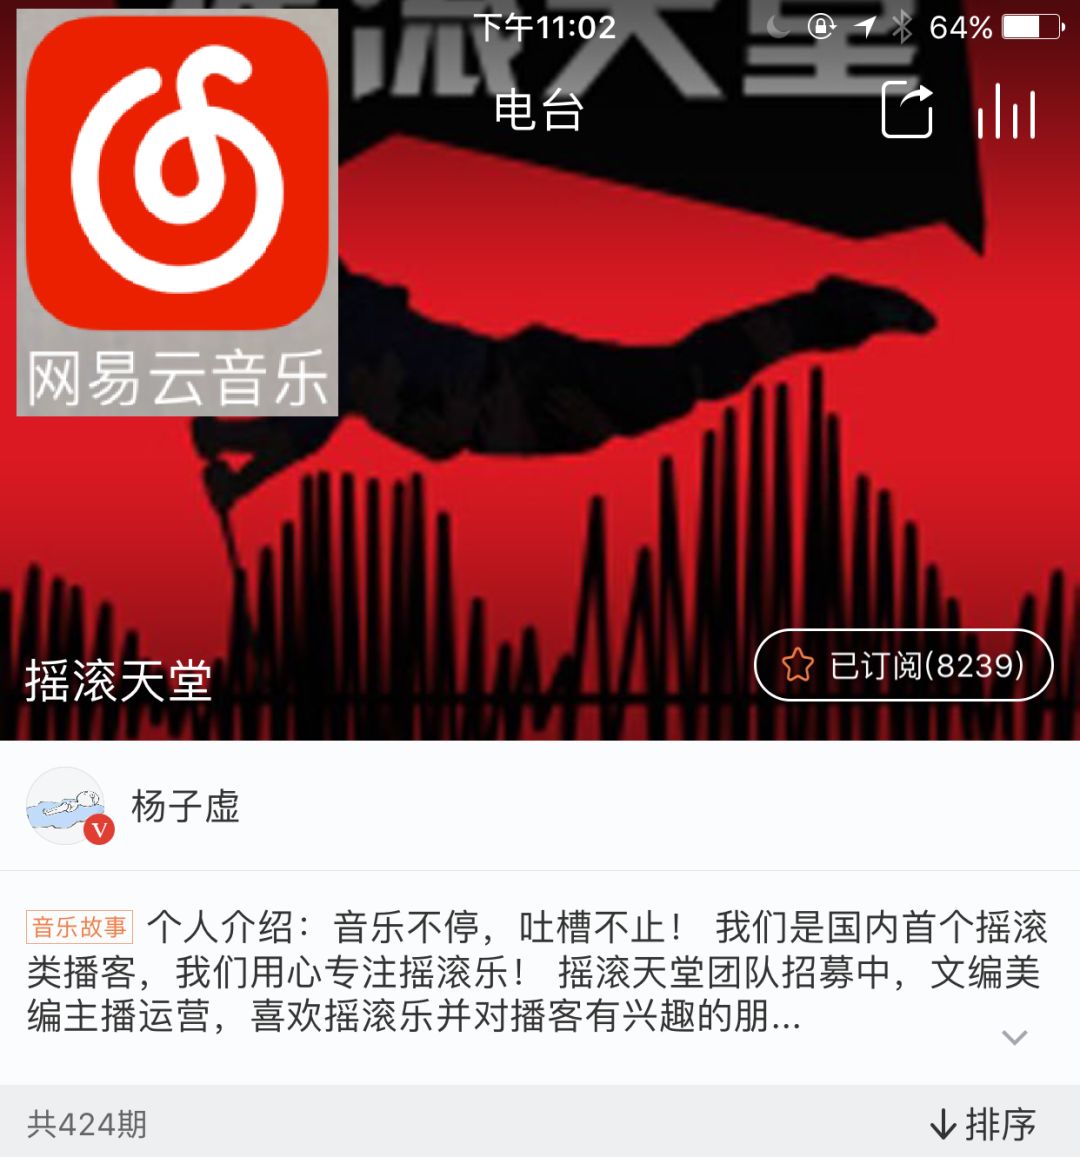 痛仰、旅行團、惘聞、丟火車、曾軼可丨中國搖滾十大新歌榜七月 娛樂 第12張